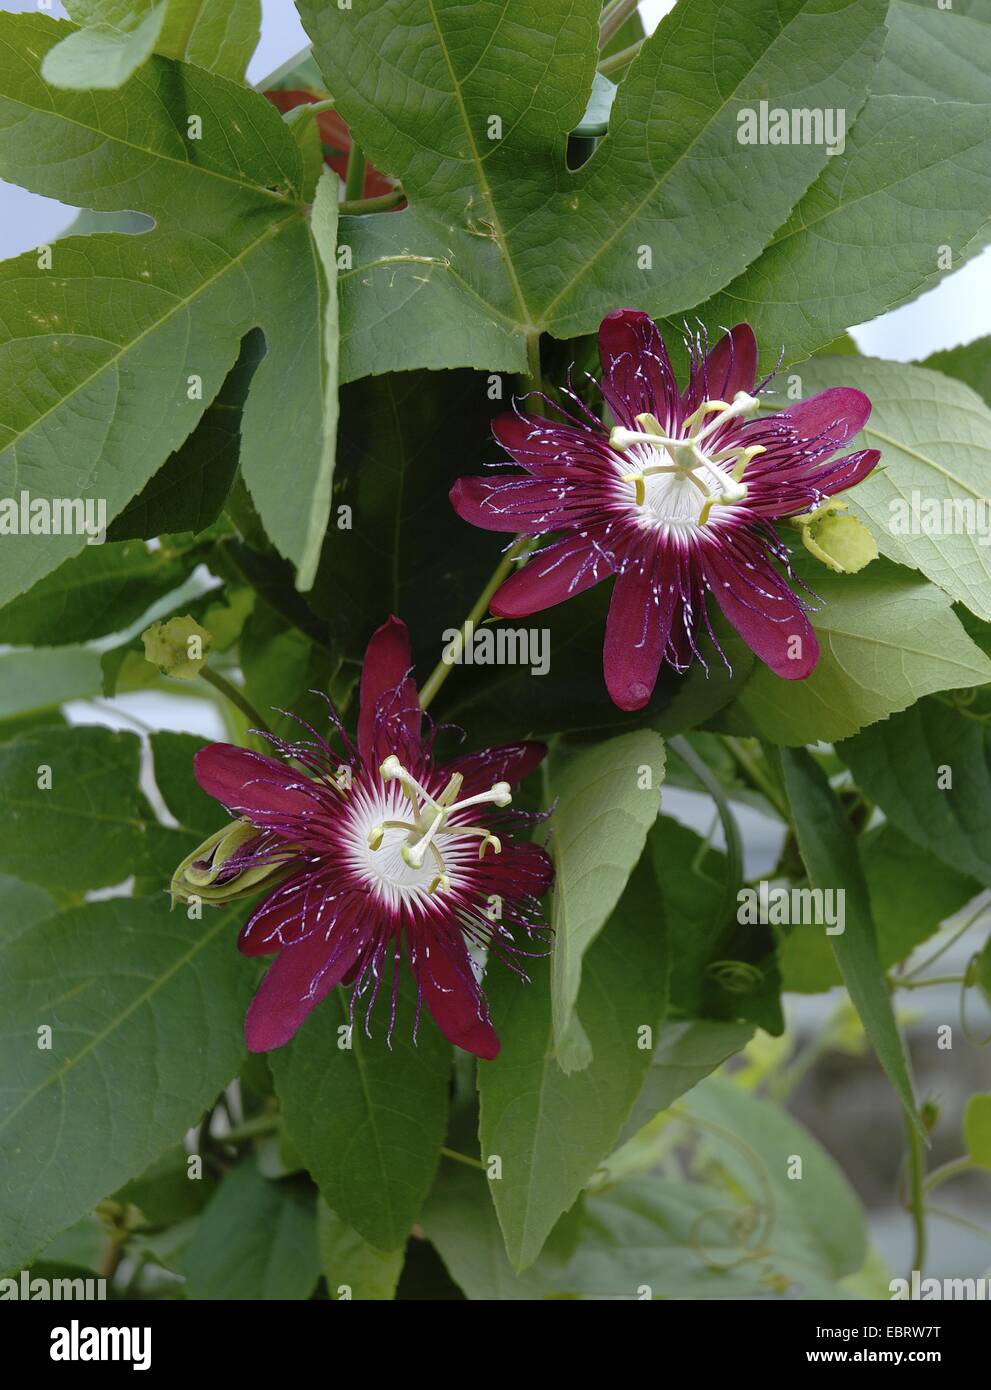 Fiore della passione (Passiflora spec.), con fiori cremisi Foto Stock